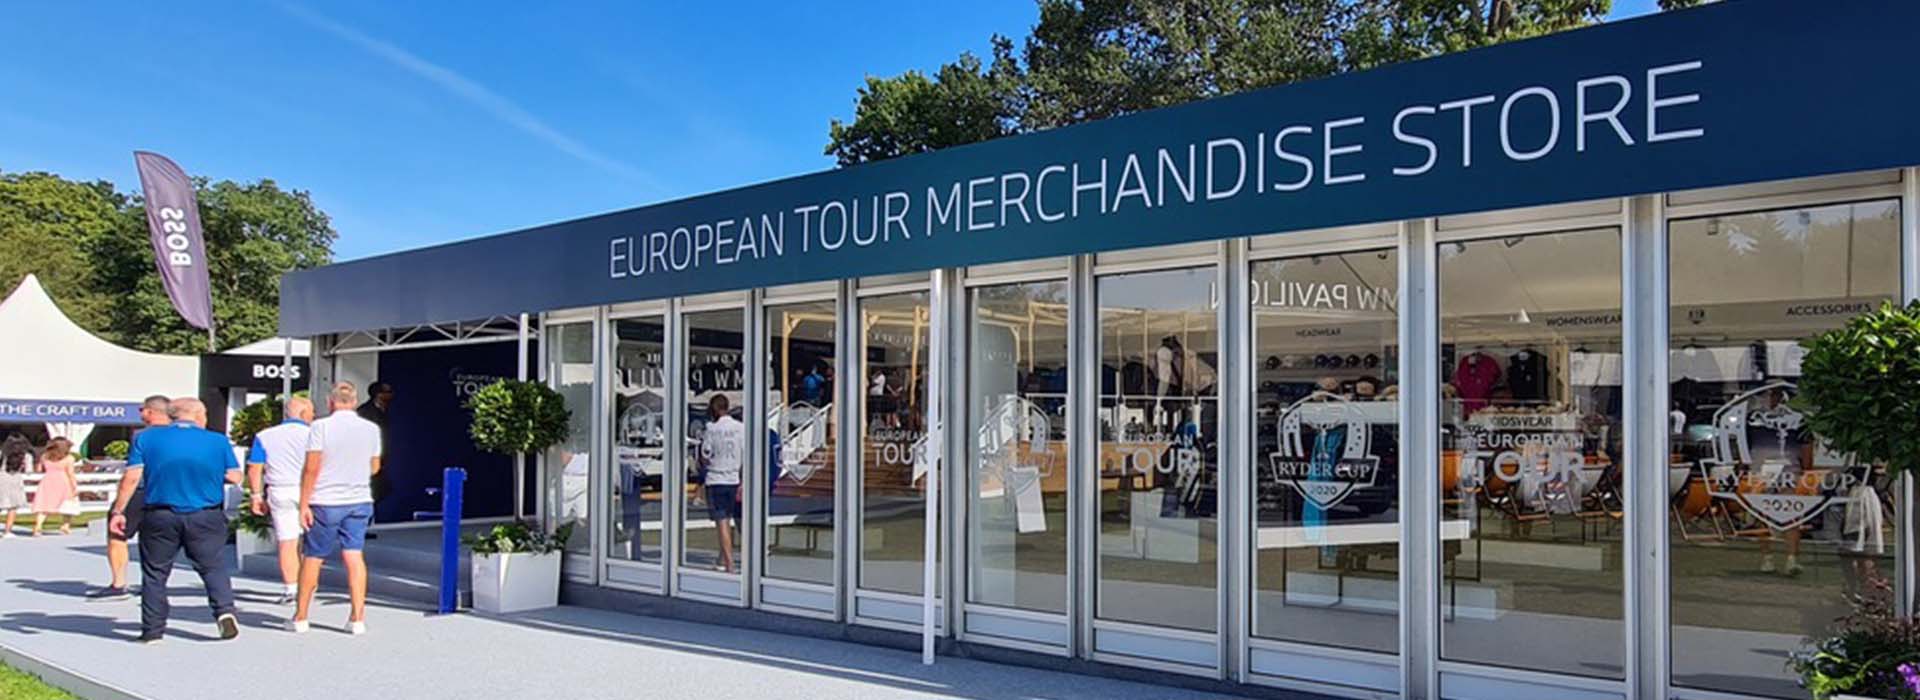 European Tour Store Merch 